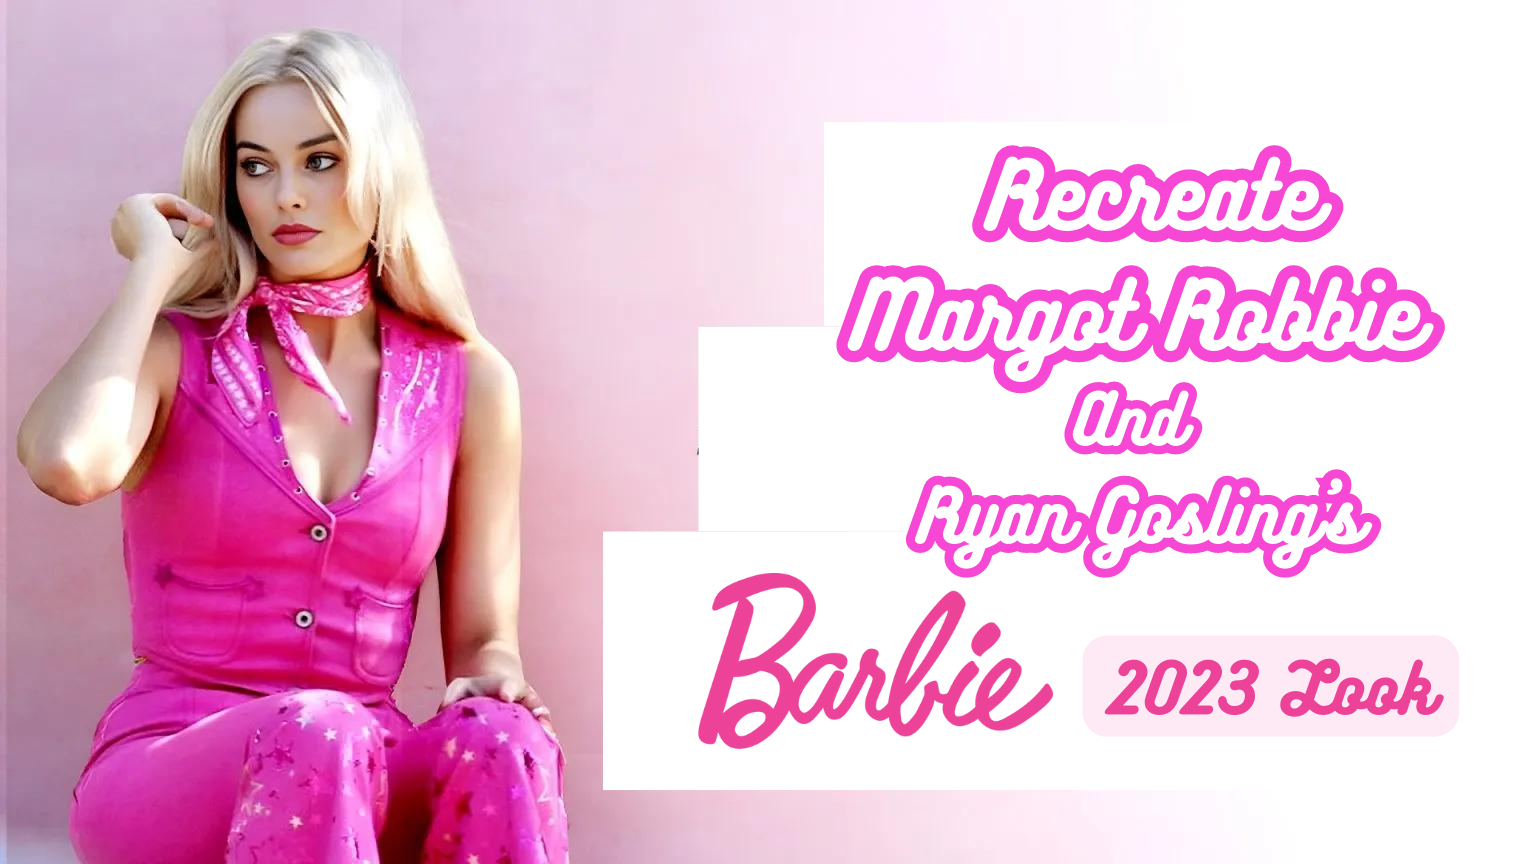 Recreate Margot Robbie And Ryan Gosling's Barbie 2023 Look